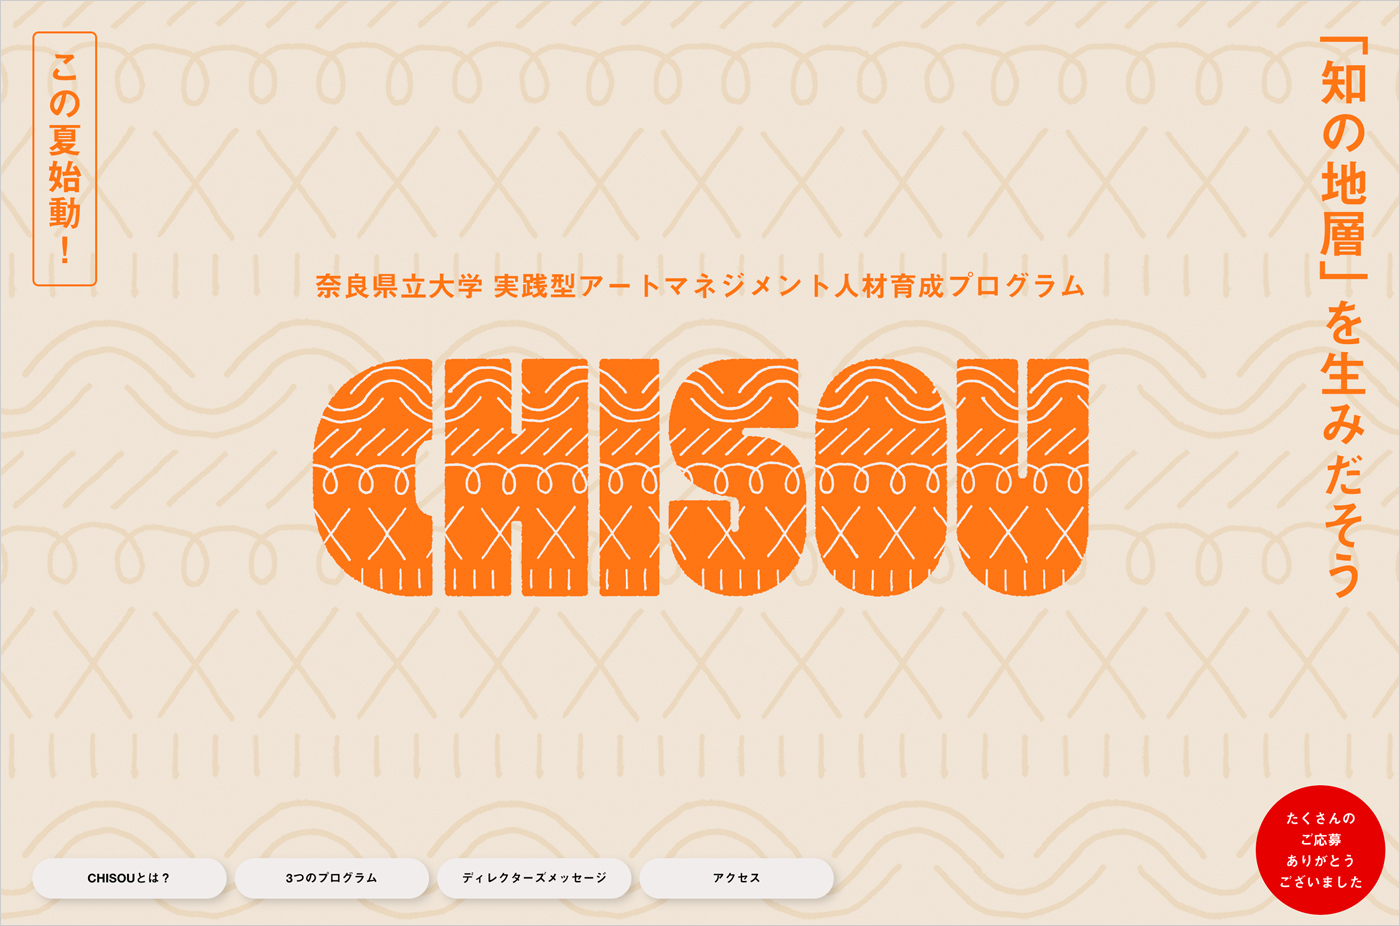 CHISOU｜奈良県立大学 実践型アートマネジメント人材育成プログラムウェブサイトの画面キャプチャ画像